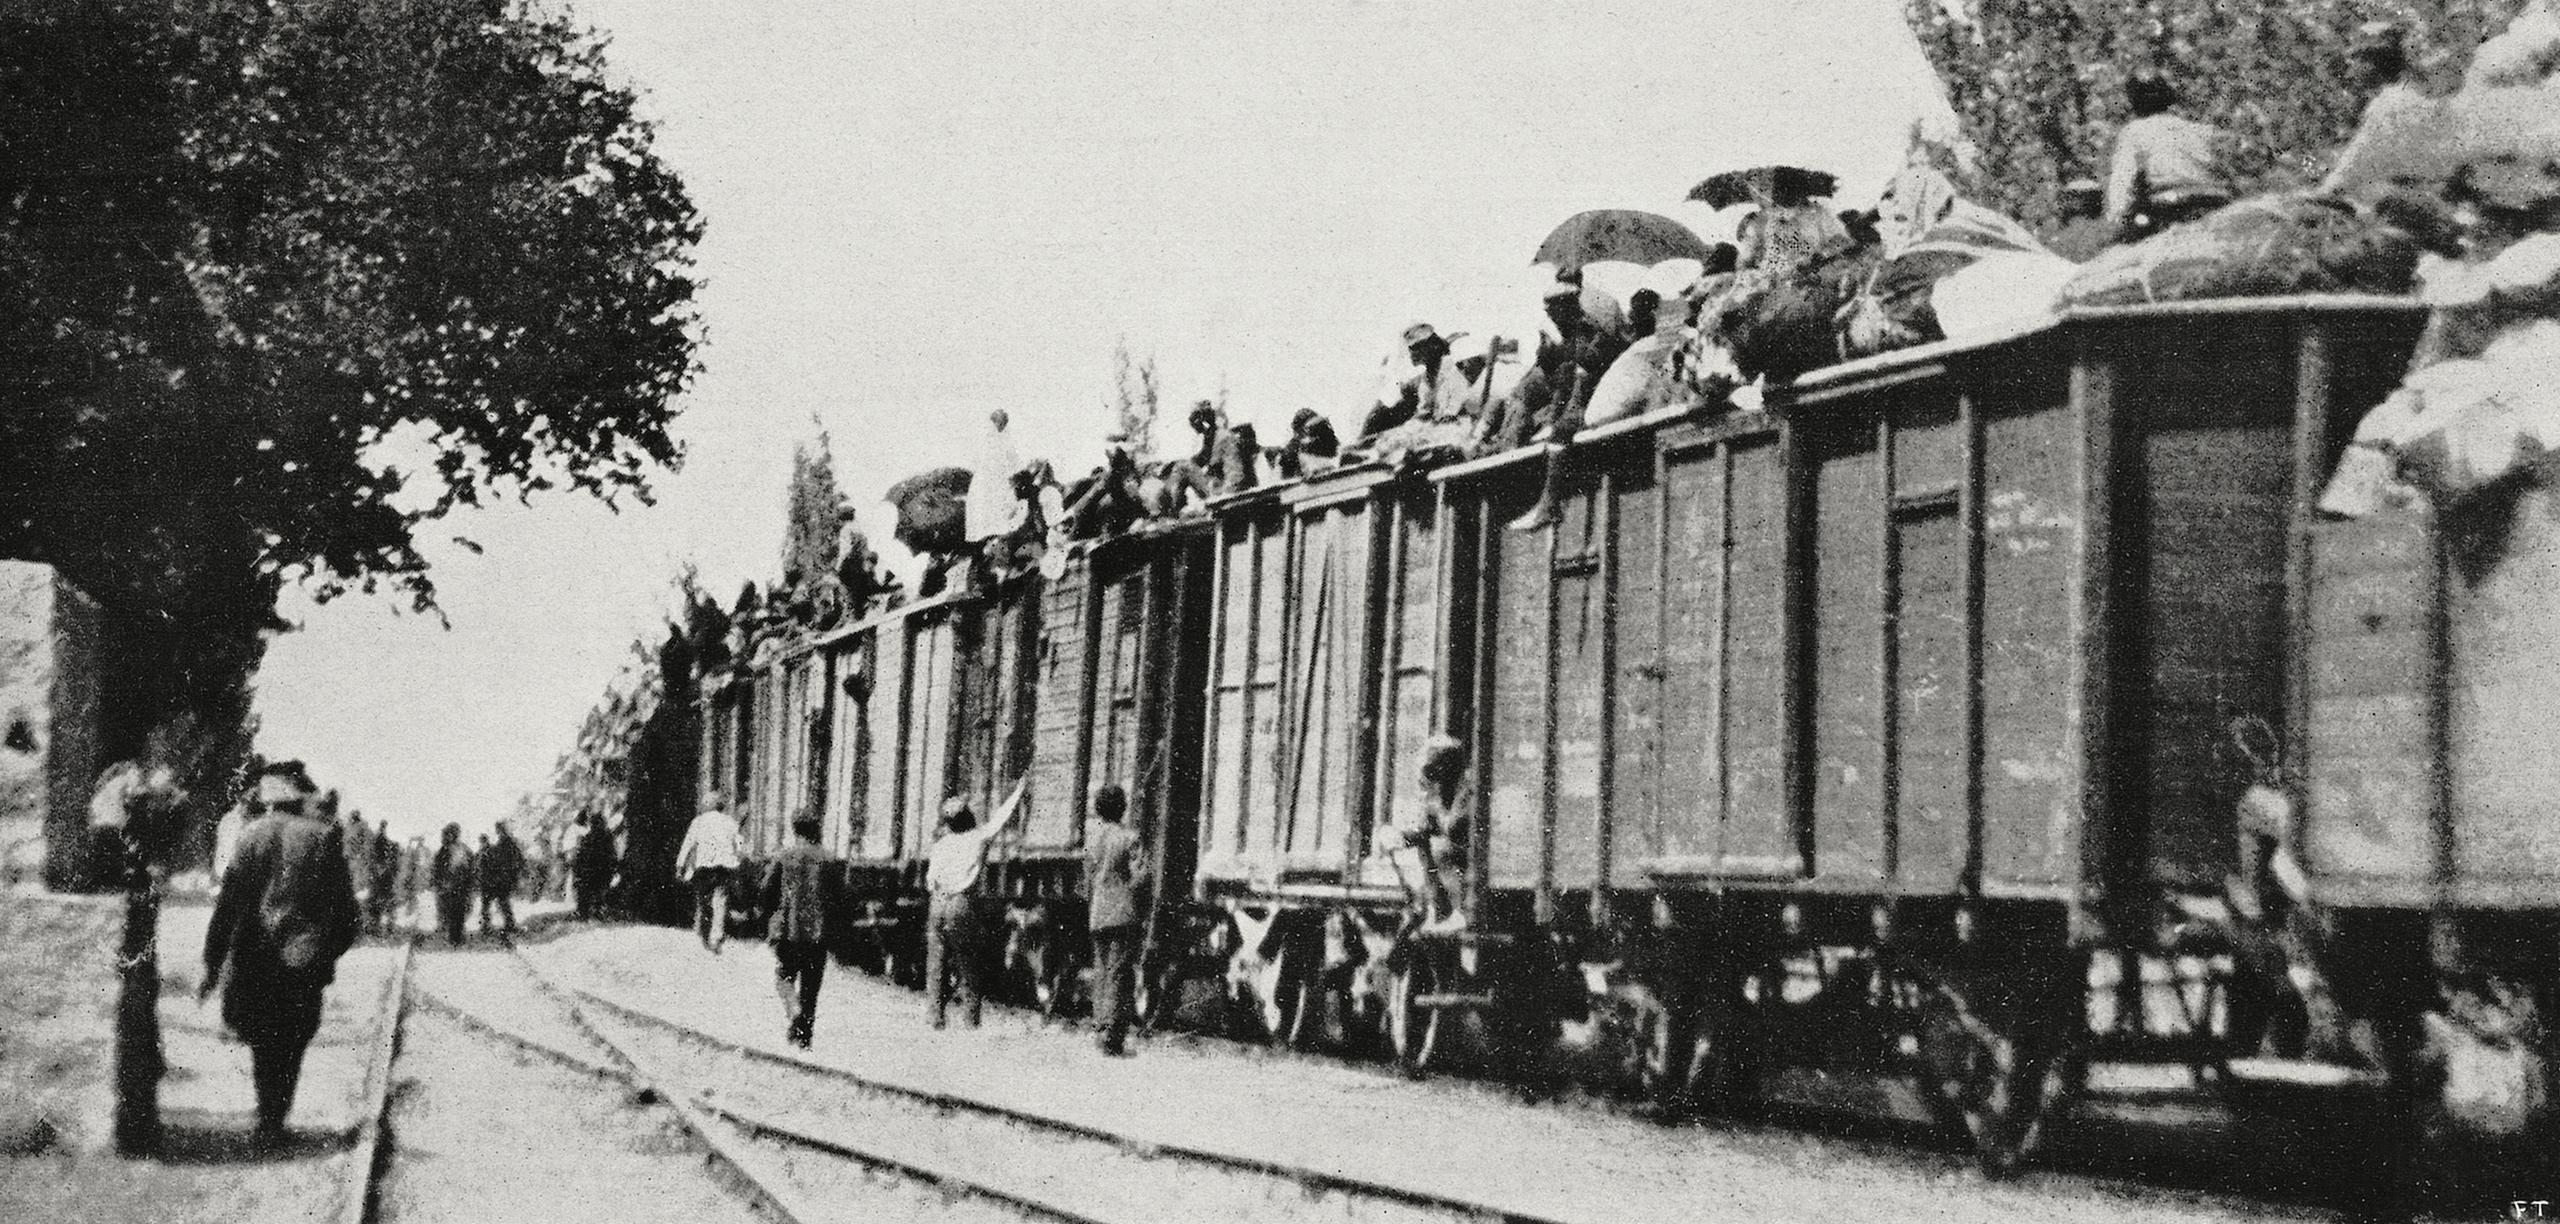 gente ammassata su vagoni ferroviari in una foto in bianco e nero